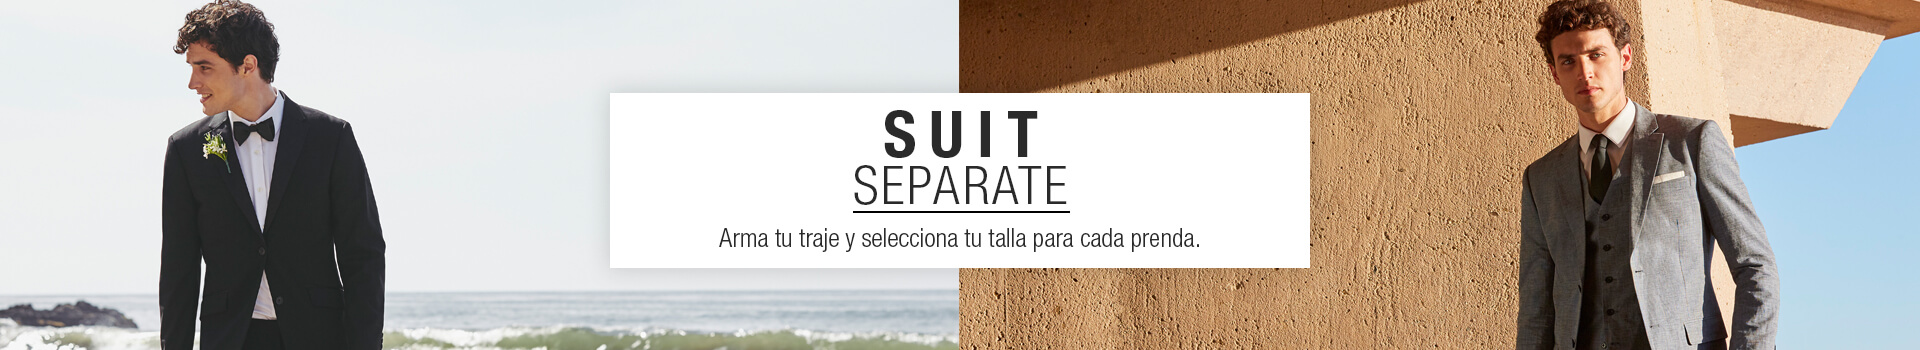 suit separate